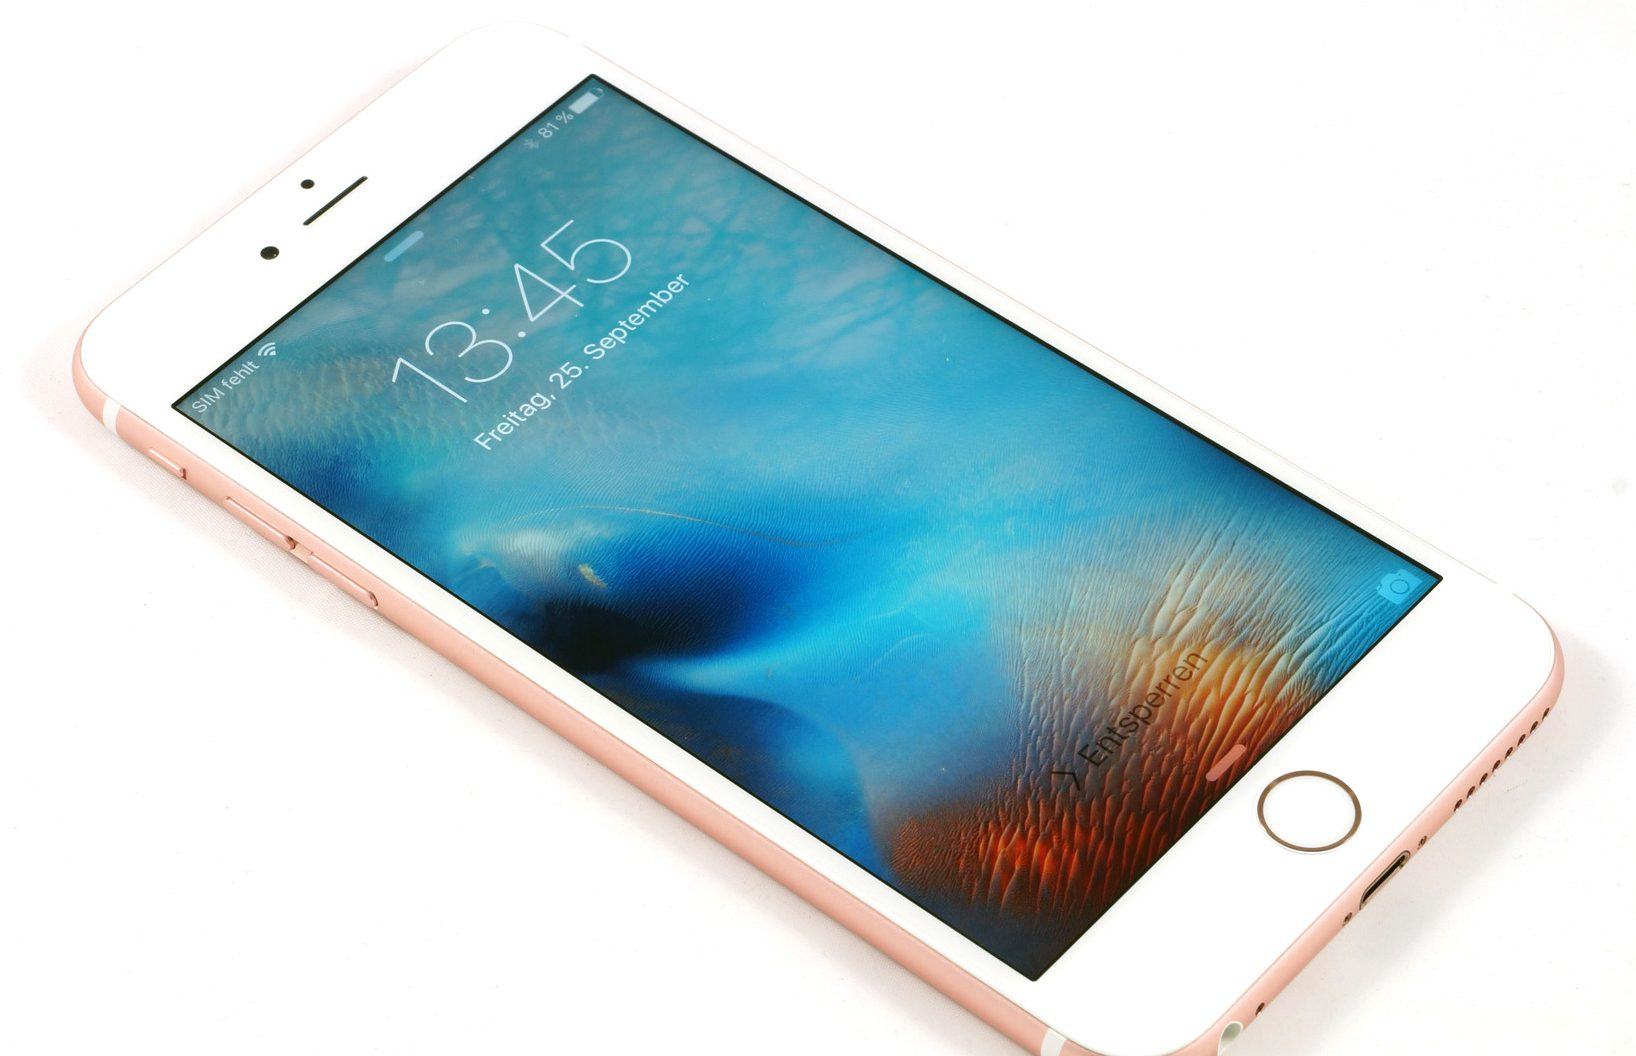 Đánh giá điện thoại iPhone 6S: Mạnh mẽ, ổn định và cao cấp!